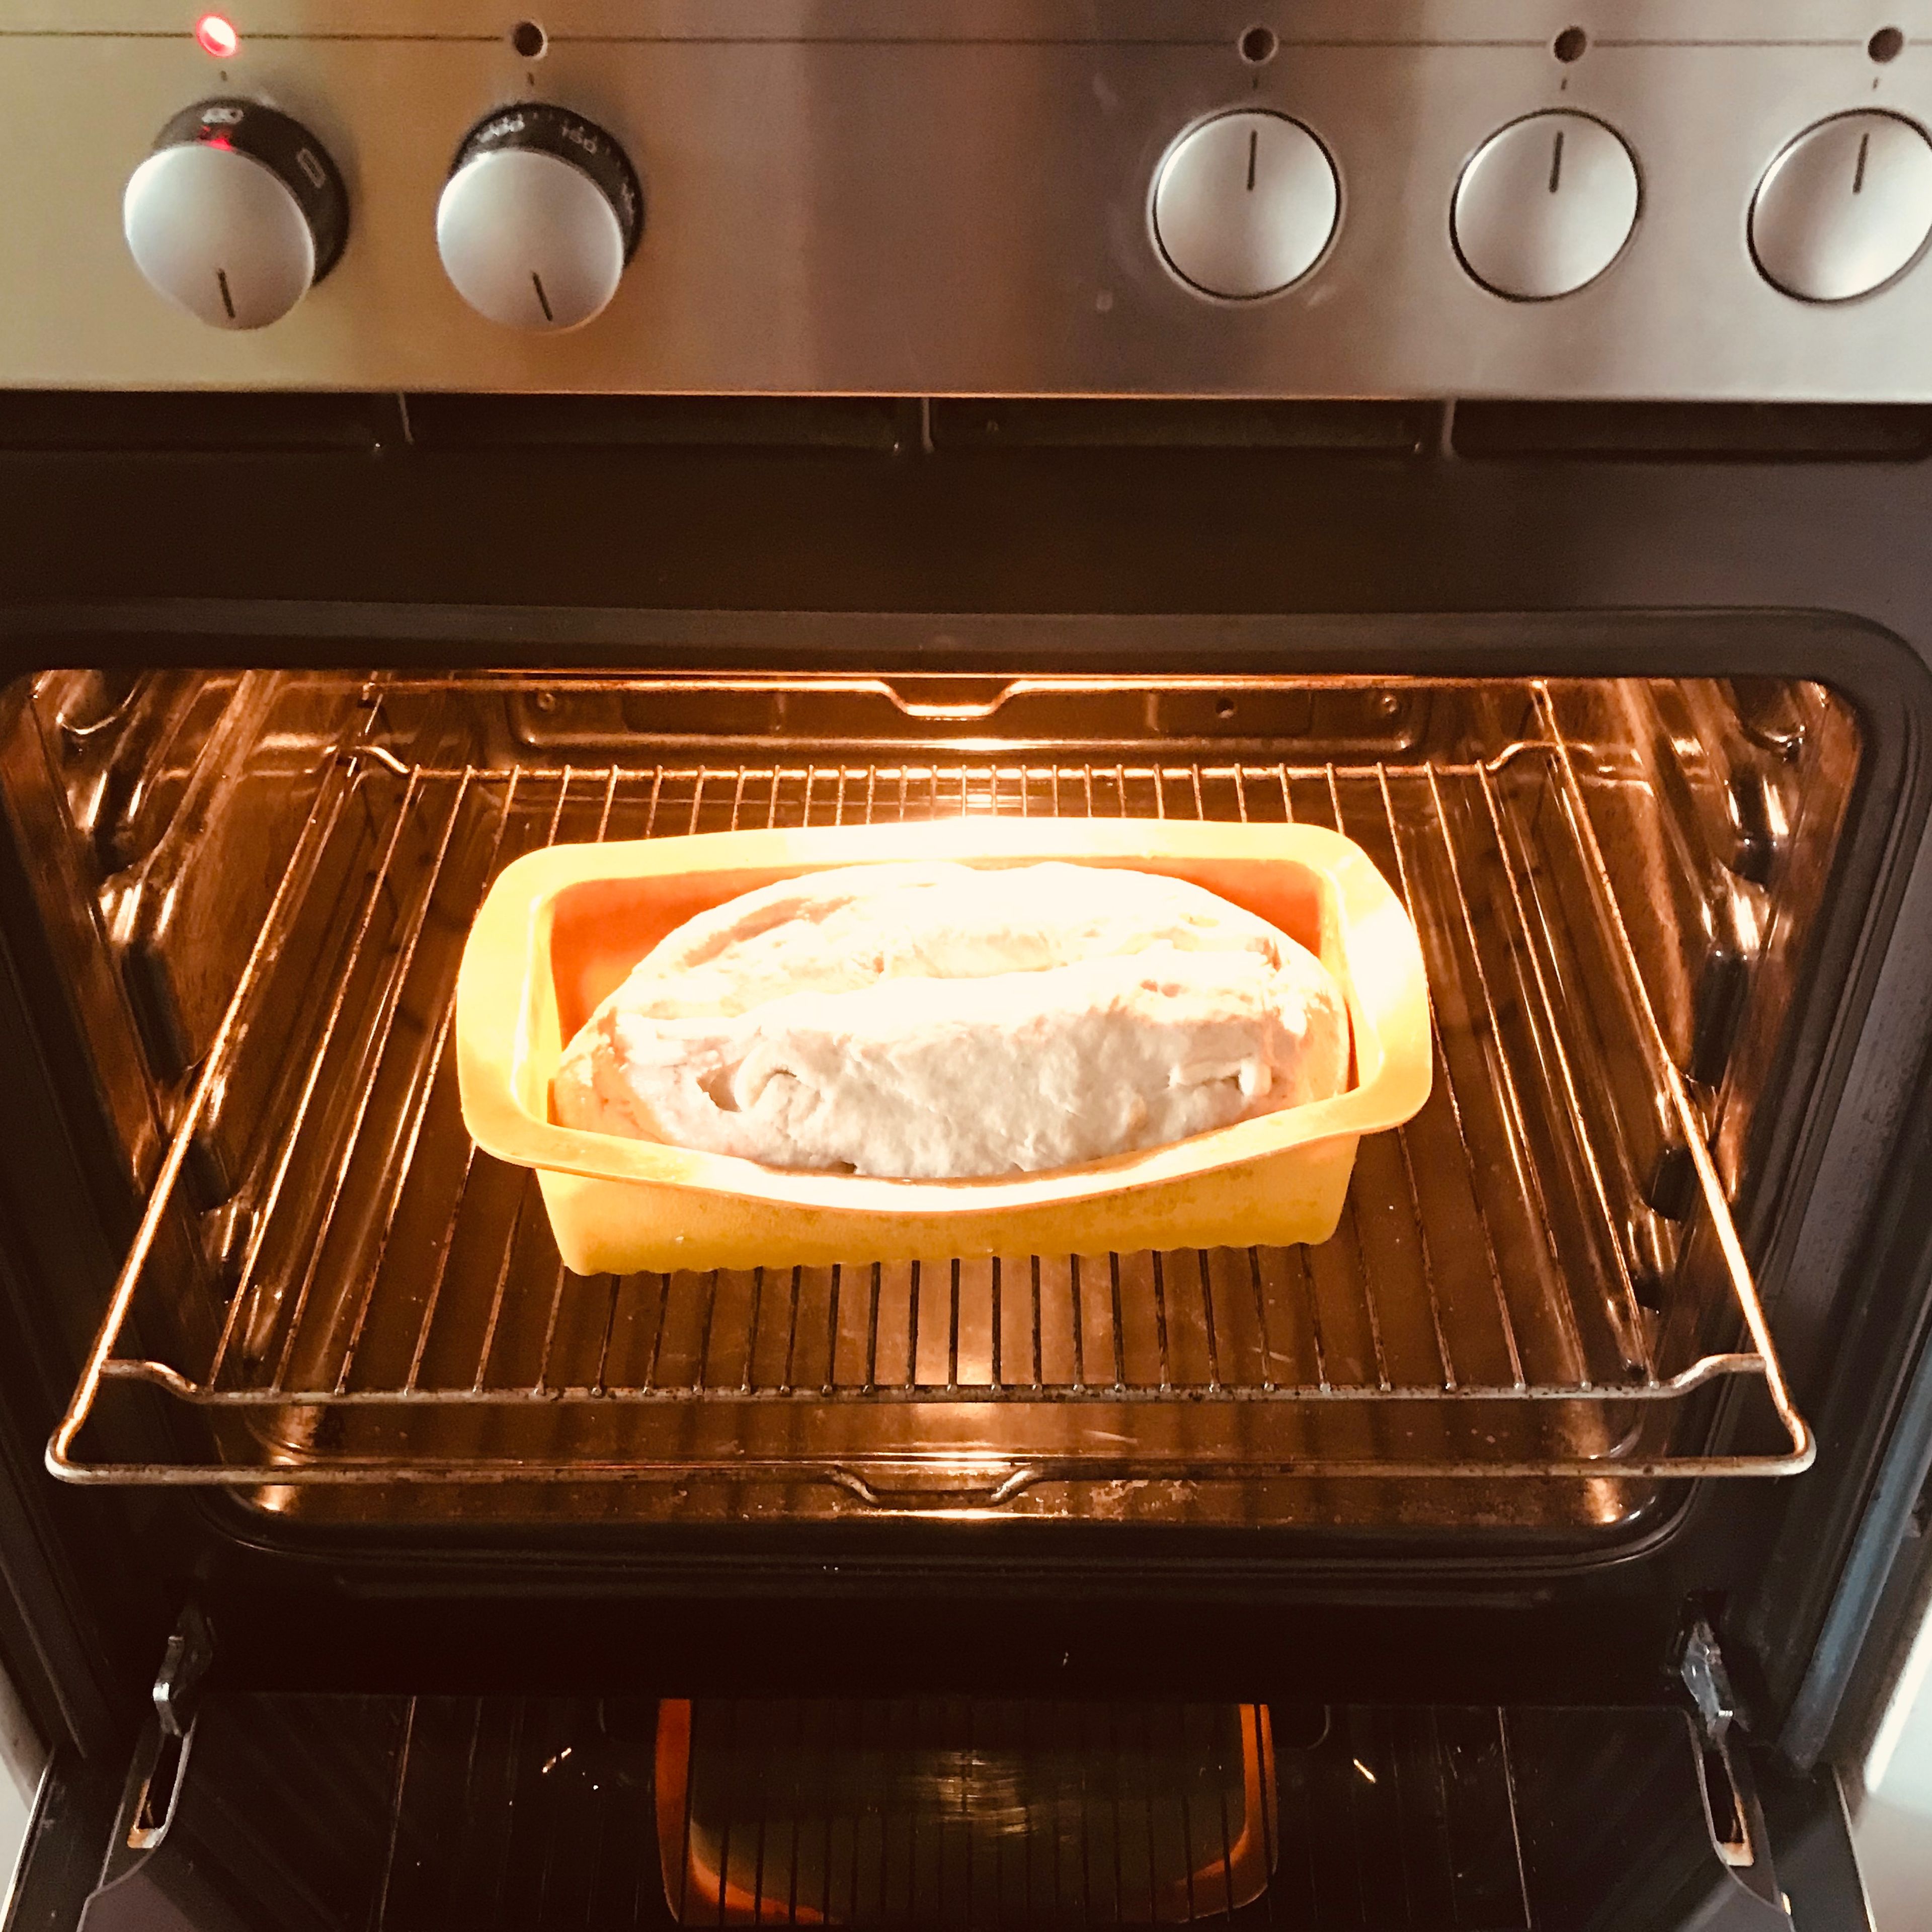 Das Brot für etwa 35min backen bis kein Teig mehr bei der Stäbchenprobe am Stäbchen kleben bleibt und das Brot leicht gebräunt ist. Alle 10min mit etwas Wasser bestreichen.